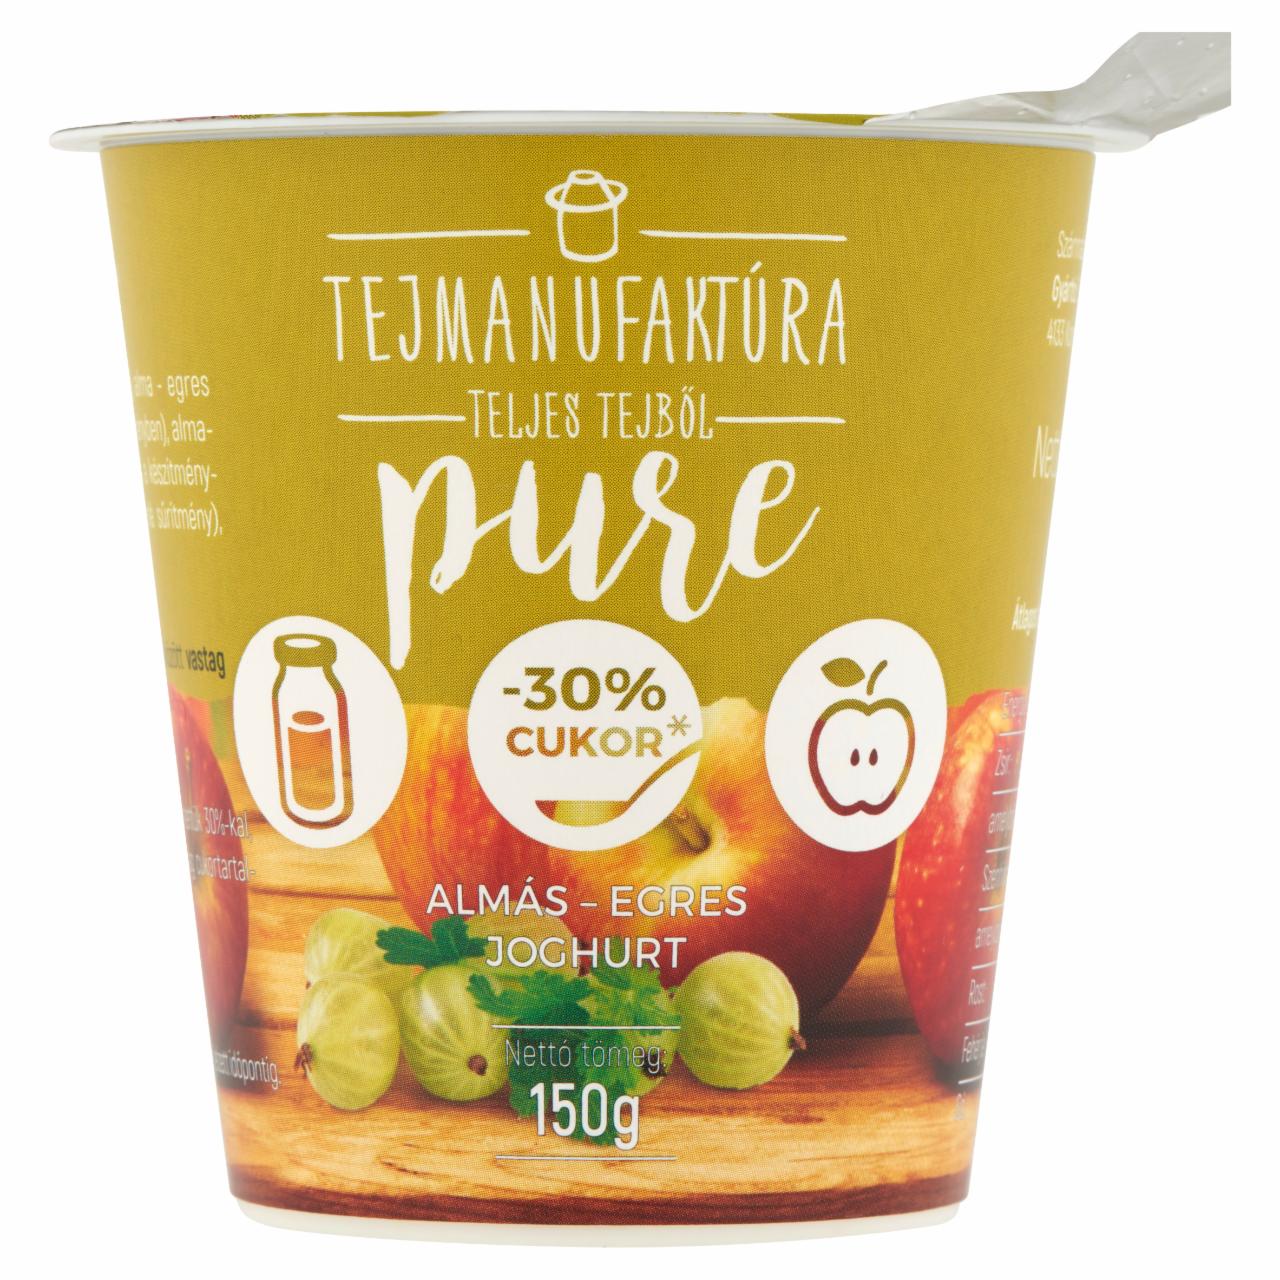 Képek - Tejmanufaktúra Pure almás-egres joghurt 150 g